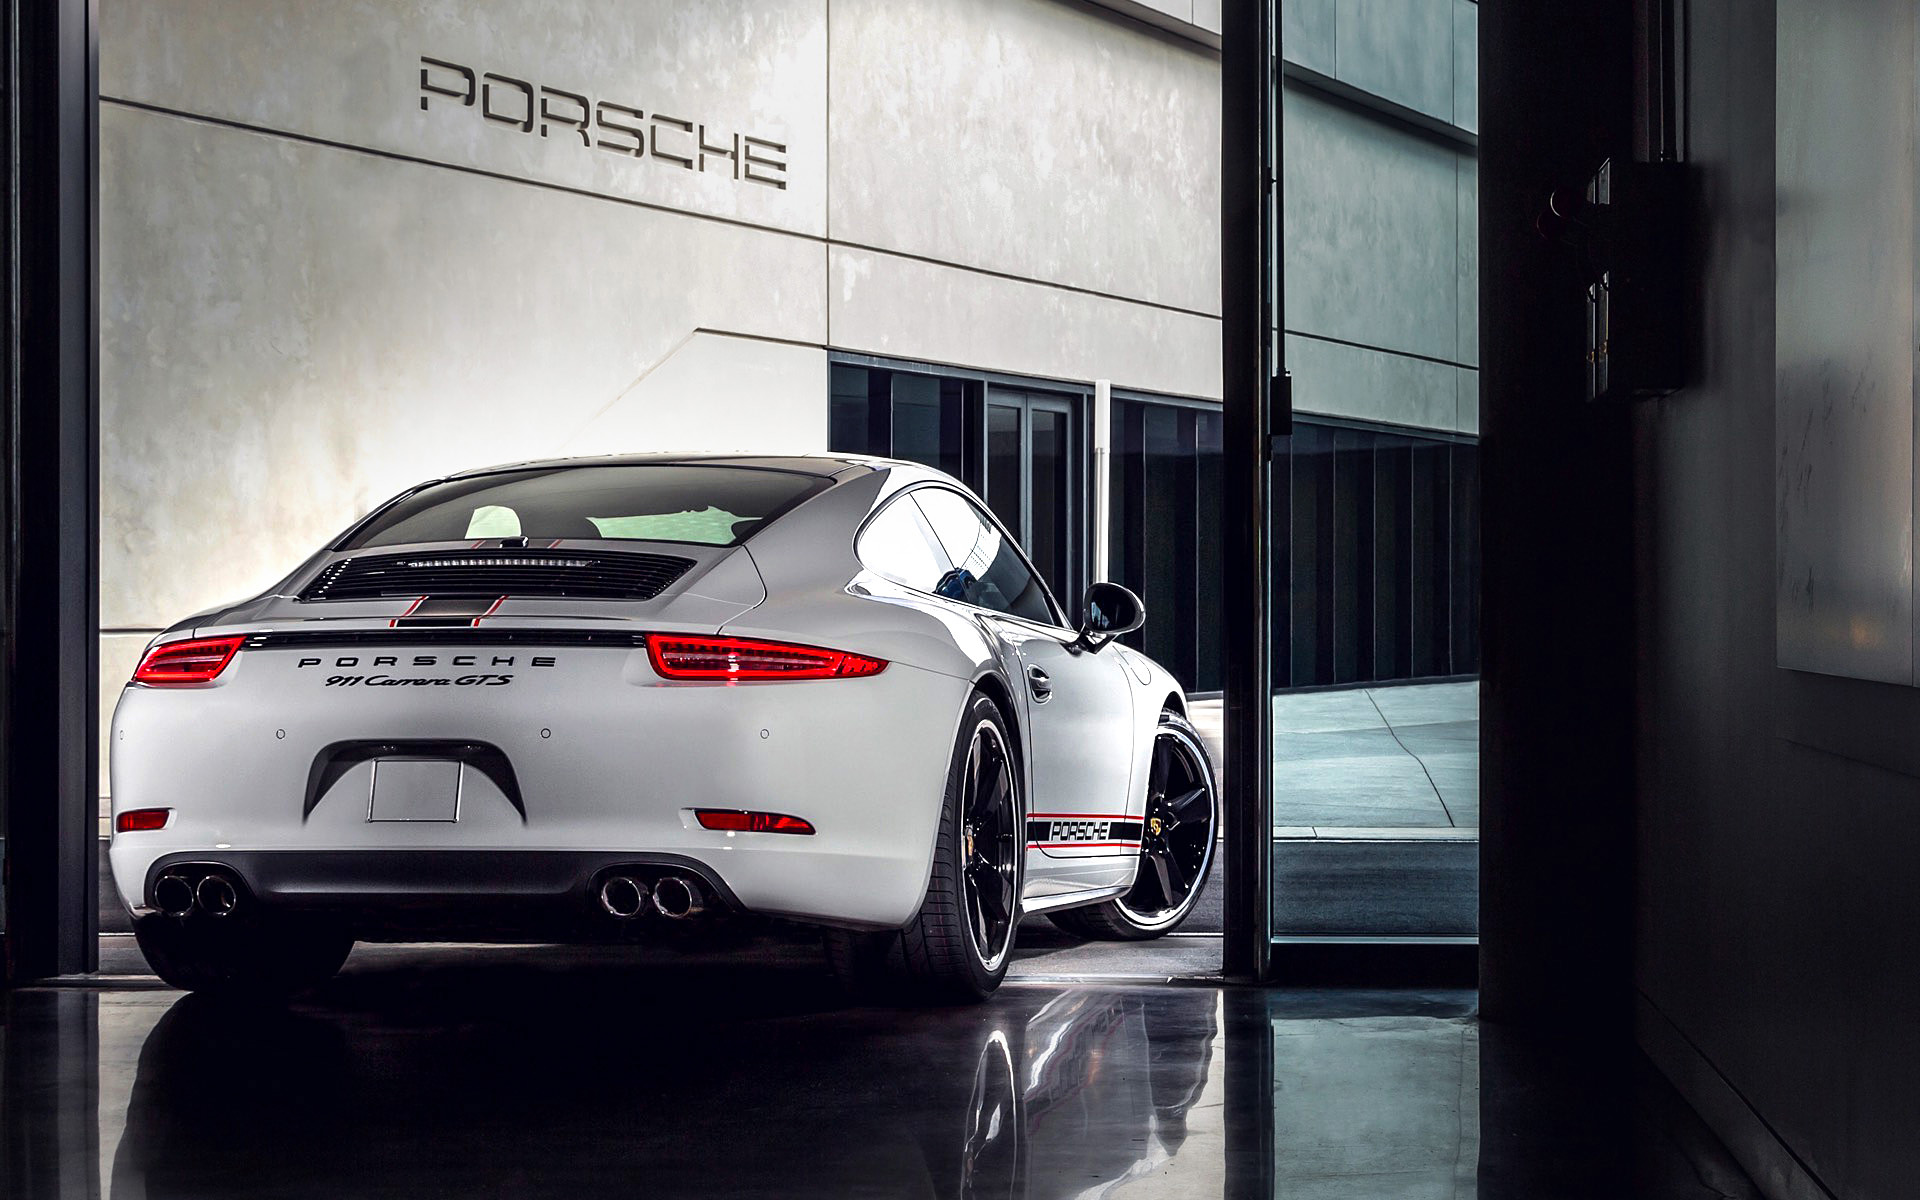  2015 Porsche 911 Rennsport Reunion Wallpaper.